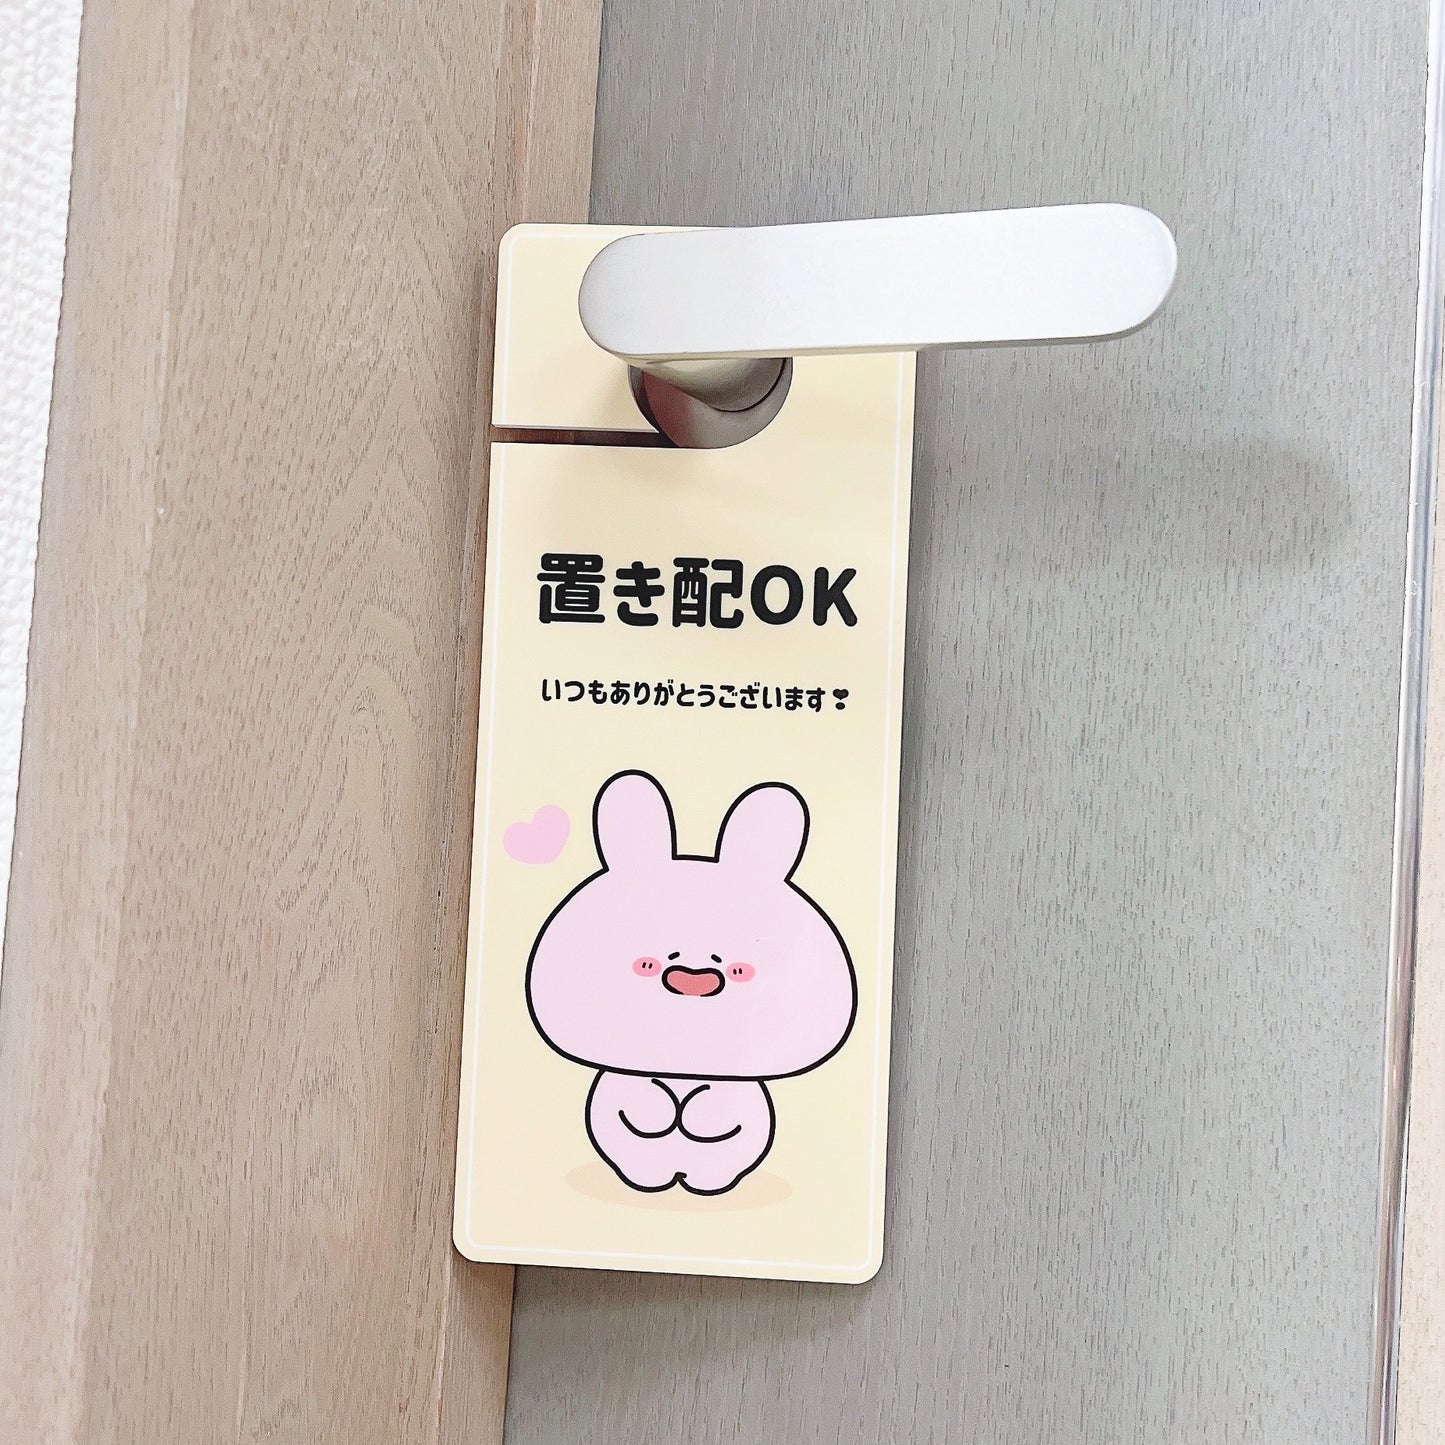 [Asamimi-chan] Étiquette de porte placée